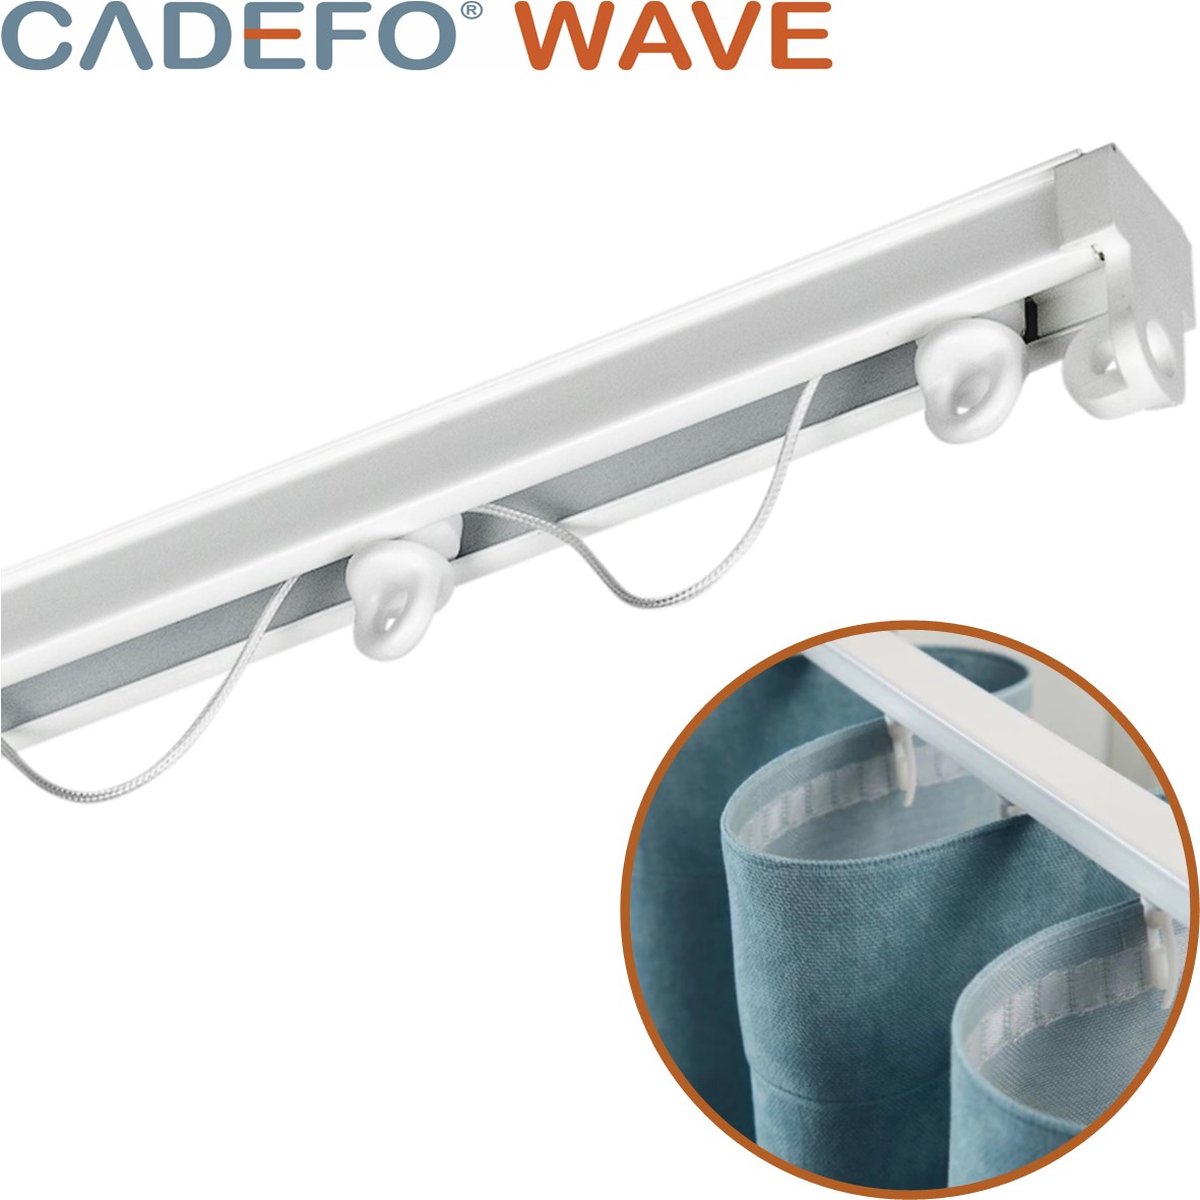 CADEFO WAVE (301 - 350 cm) Gordijnrails - Compleet op maat! - UIT 1 STUK - Leverbaar tot 6 meter - Plafondbevestiging - Lengte 328 cm